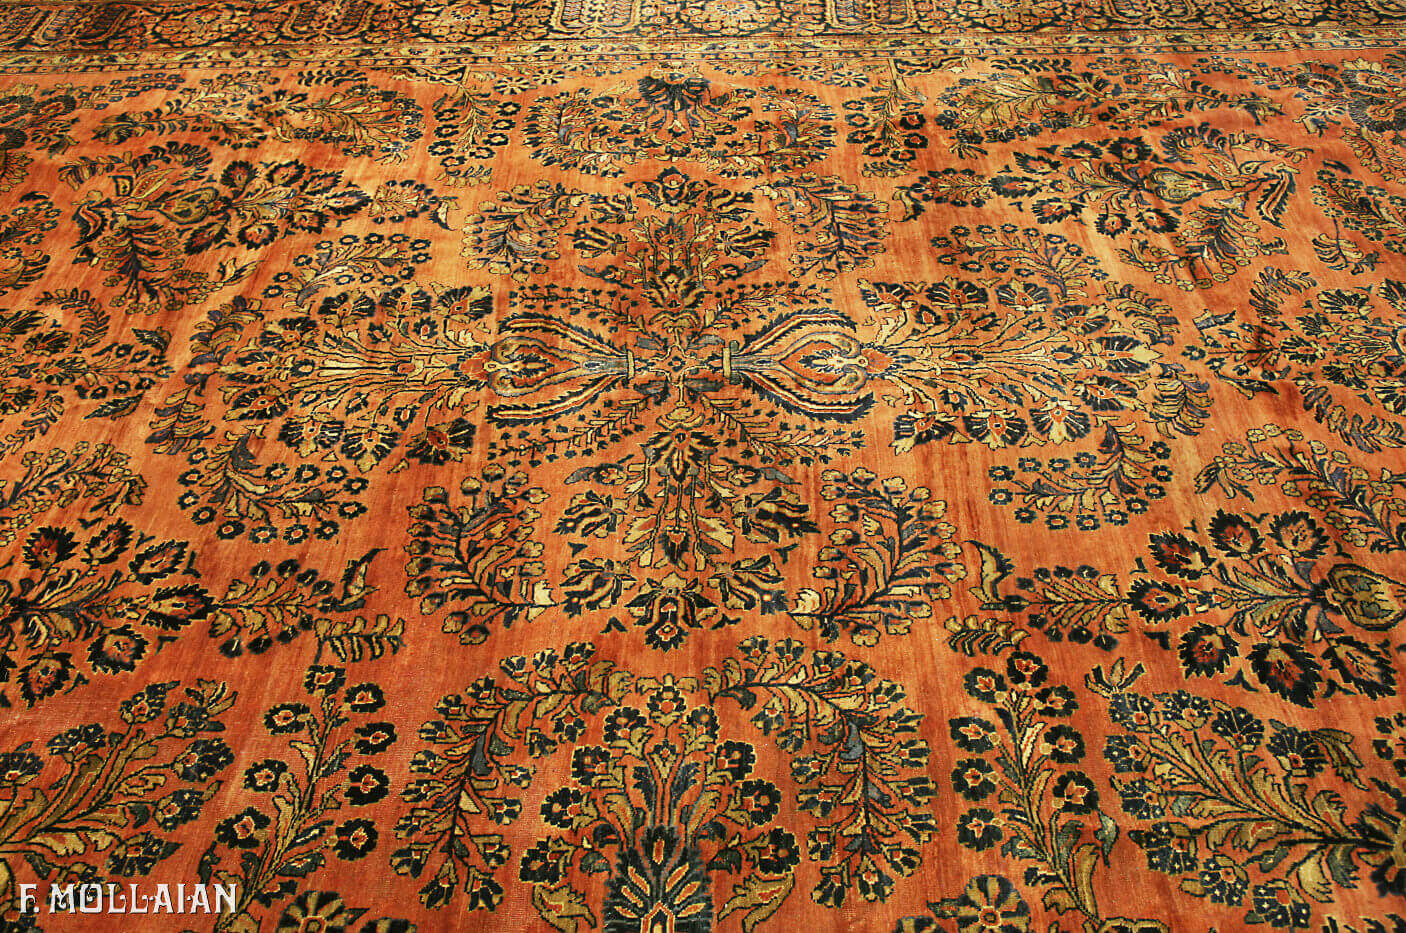 Antique Persian Saruk Carpet n°:64298645